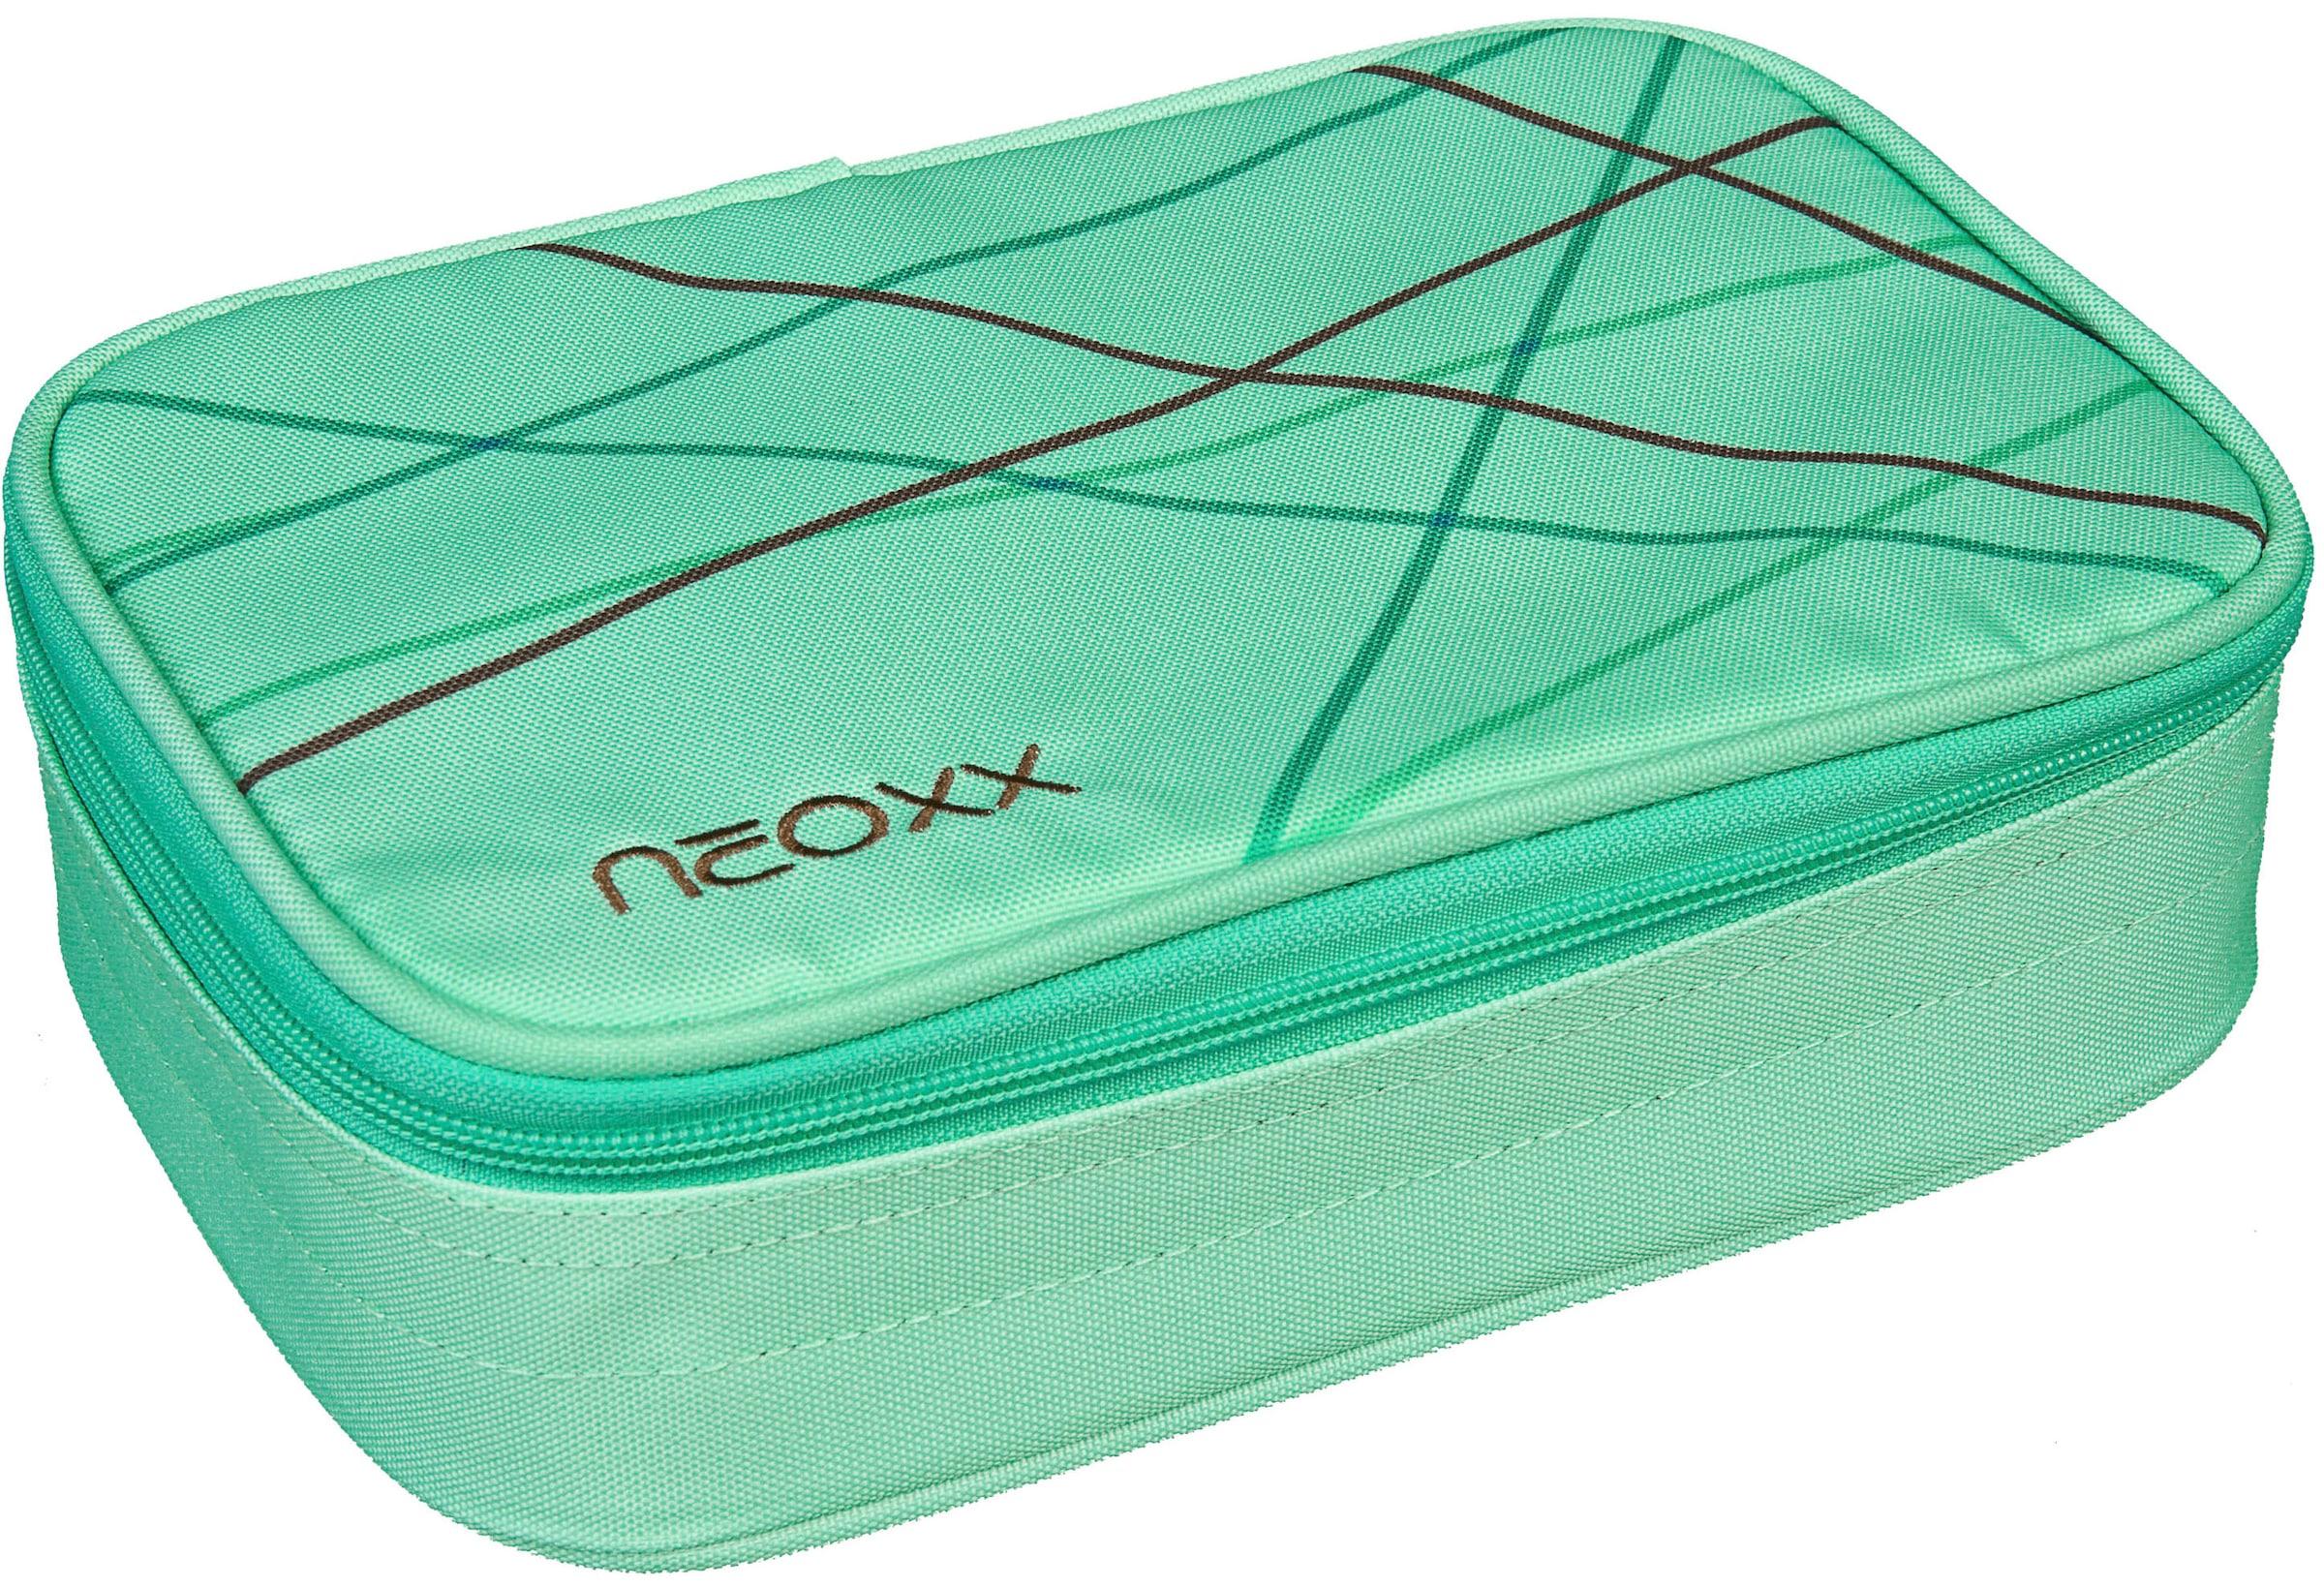 neoxx Schreibgeräteetui »Schlamperbox, Dunk, Mint Jelmoli-Versand aus teilweise recyceltem to online | shoppen be«, Material